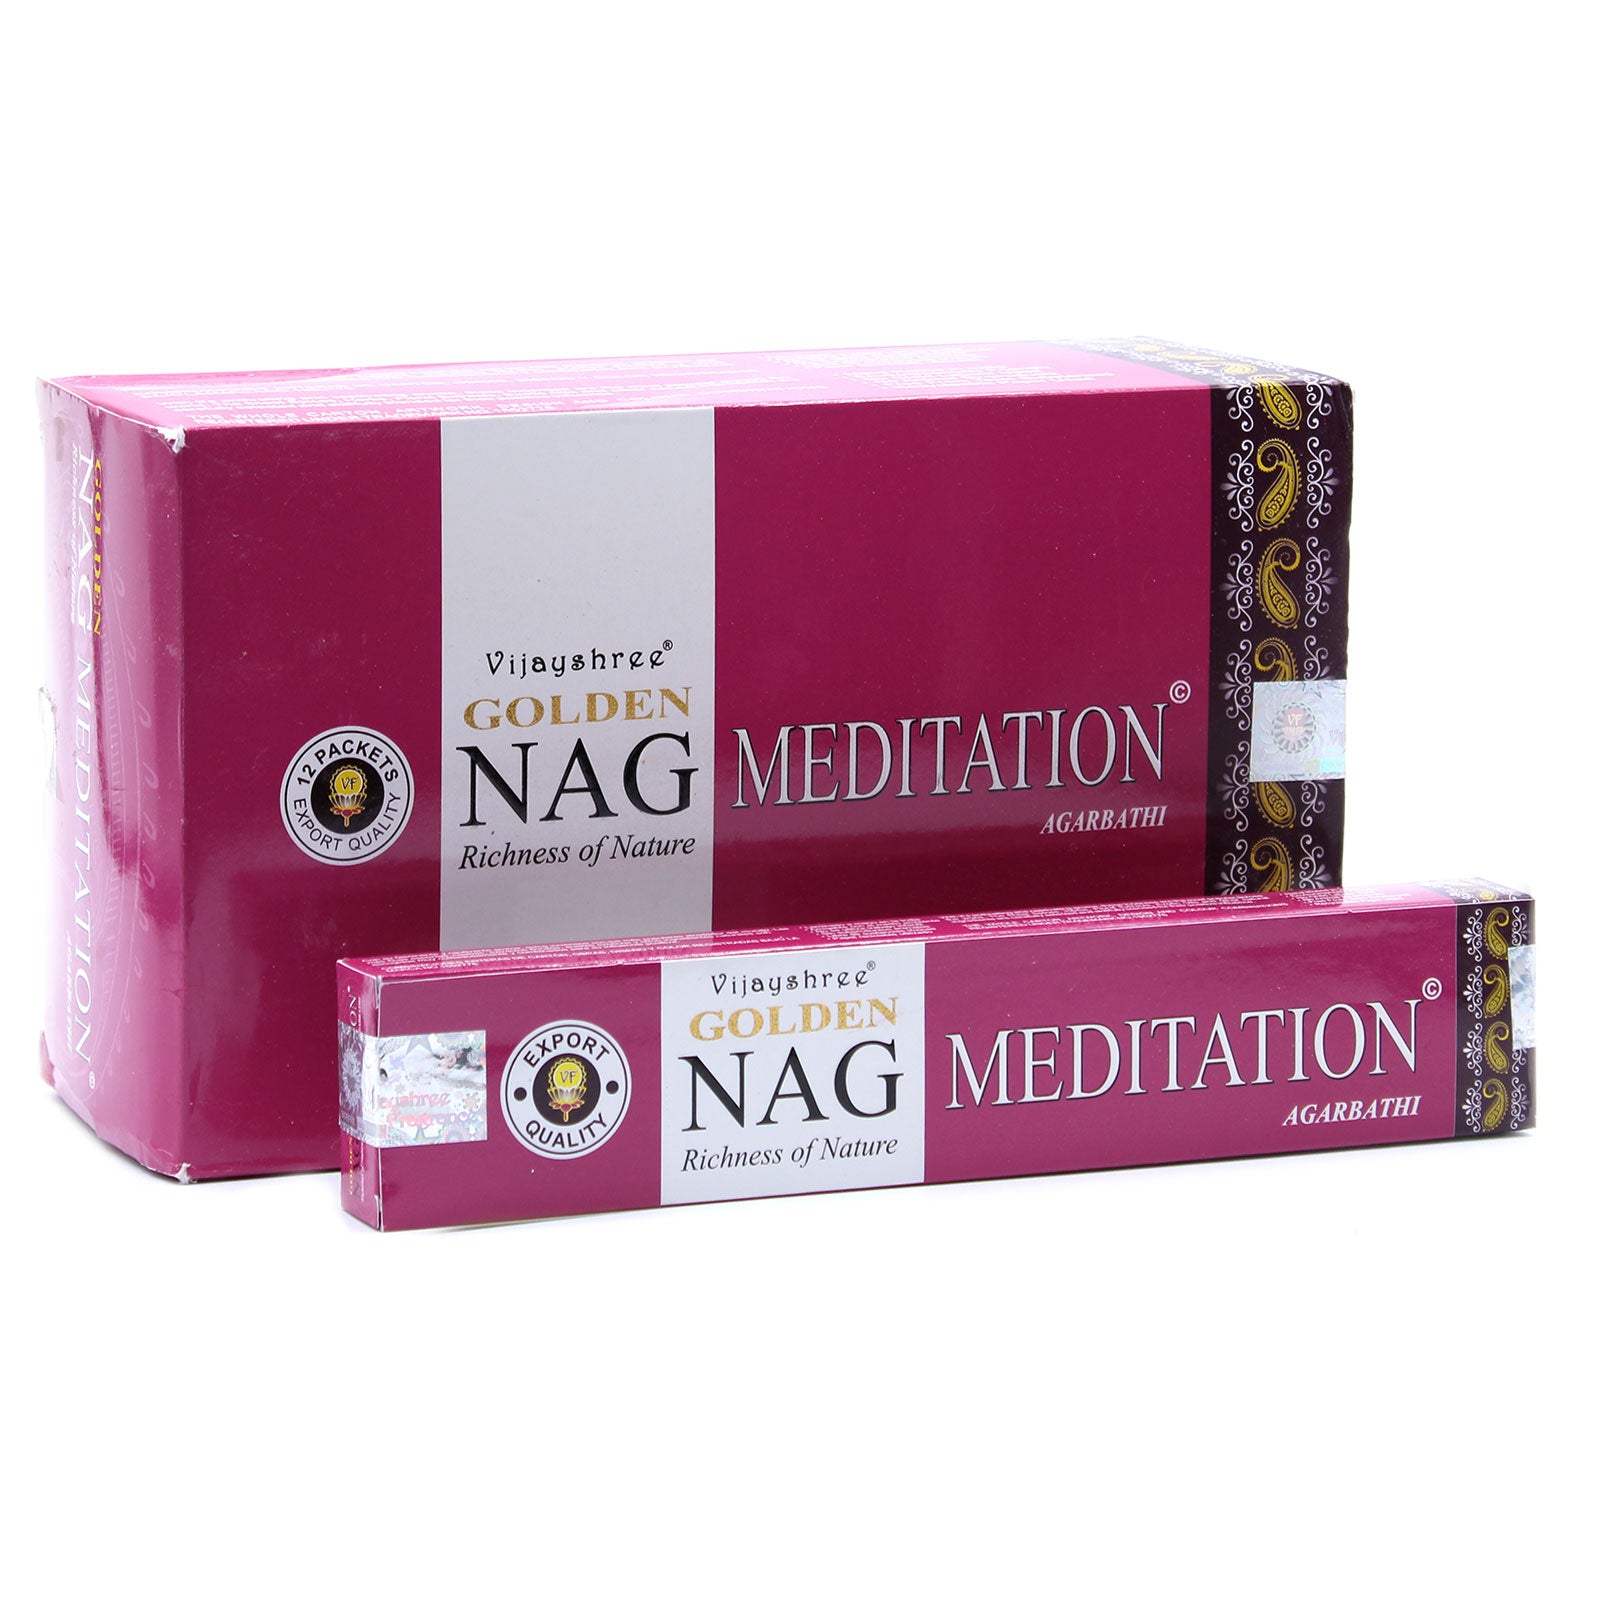 View 15g Golden Nag Meditation Incense information